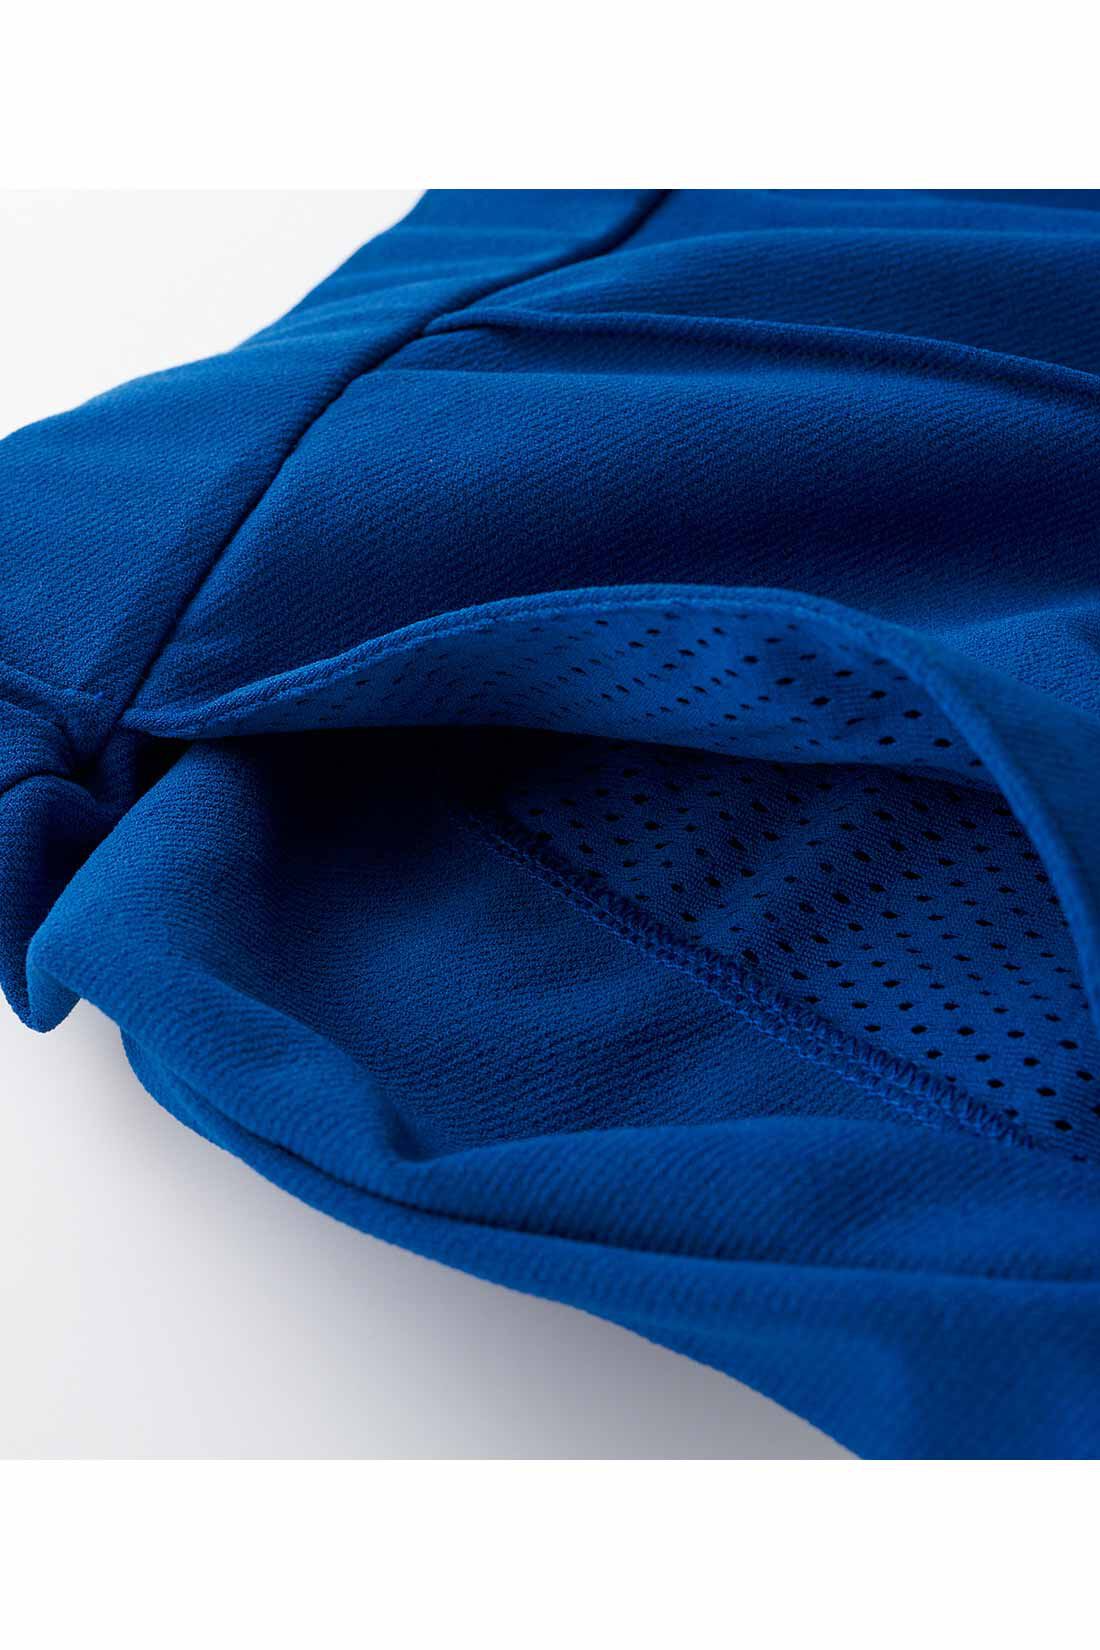 Live in  comfort|リブ イン コンフォート アクティブに動ける！ 吸汗速乾＆抗菌防臭素材のセンタータックパンツ 〈ブルー〉|ポケット布はメッシュ素材だから風が通って涼やか。